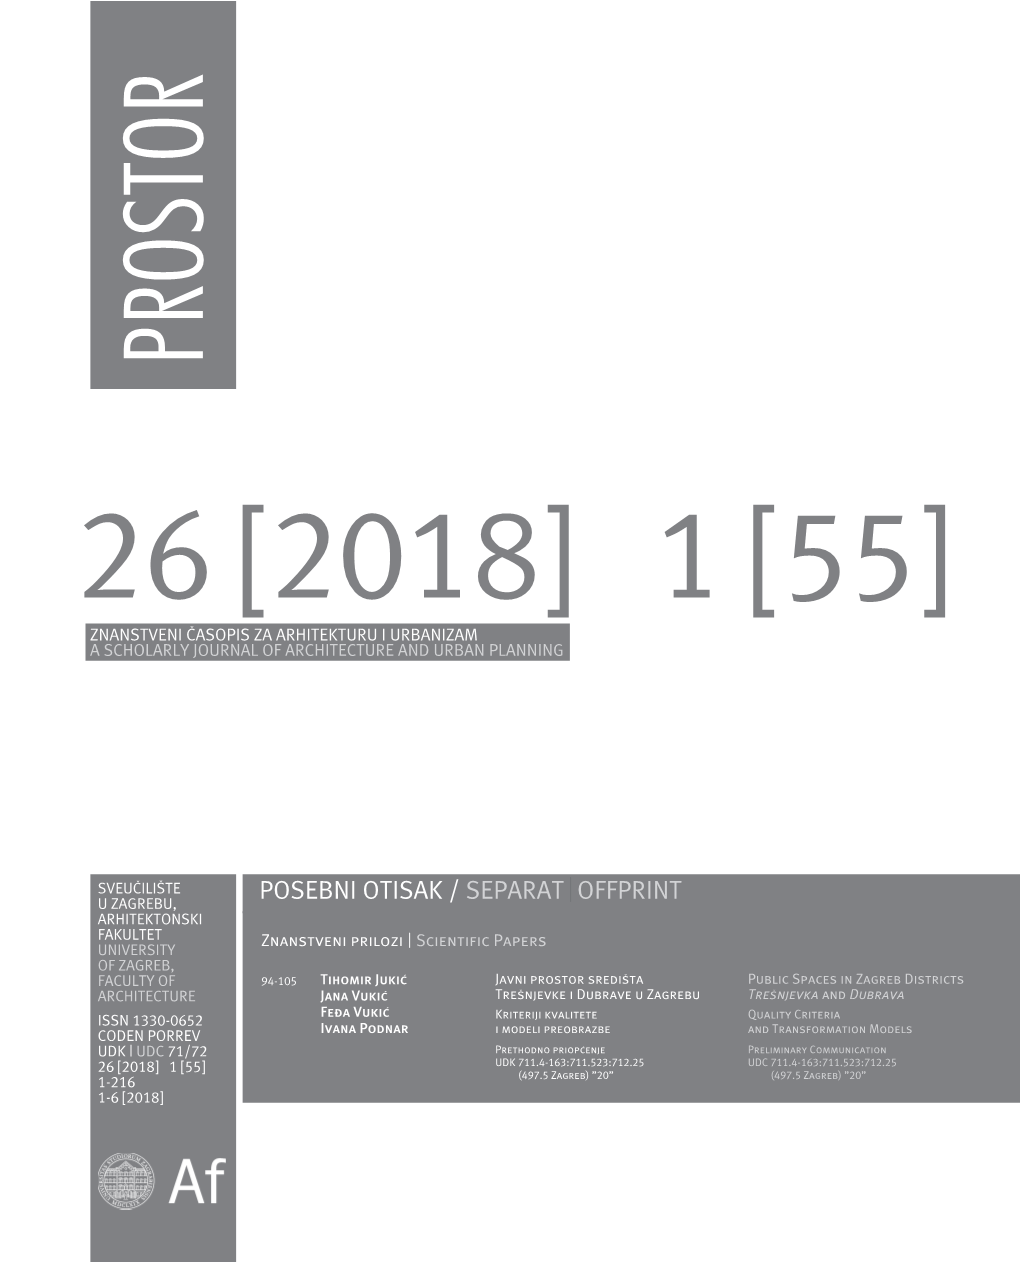 Trešnjevka Public Spacesinzagrebdistricts (497.5 Zagreb)”20” and Dubrava 94